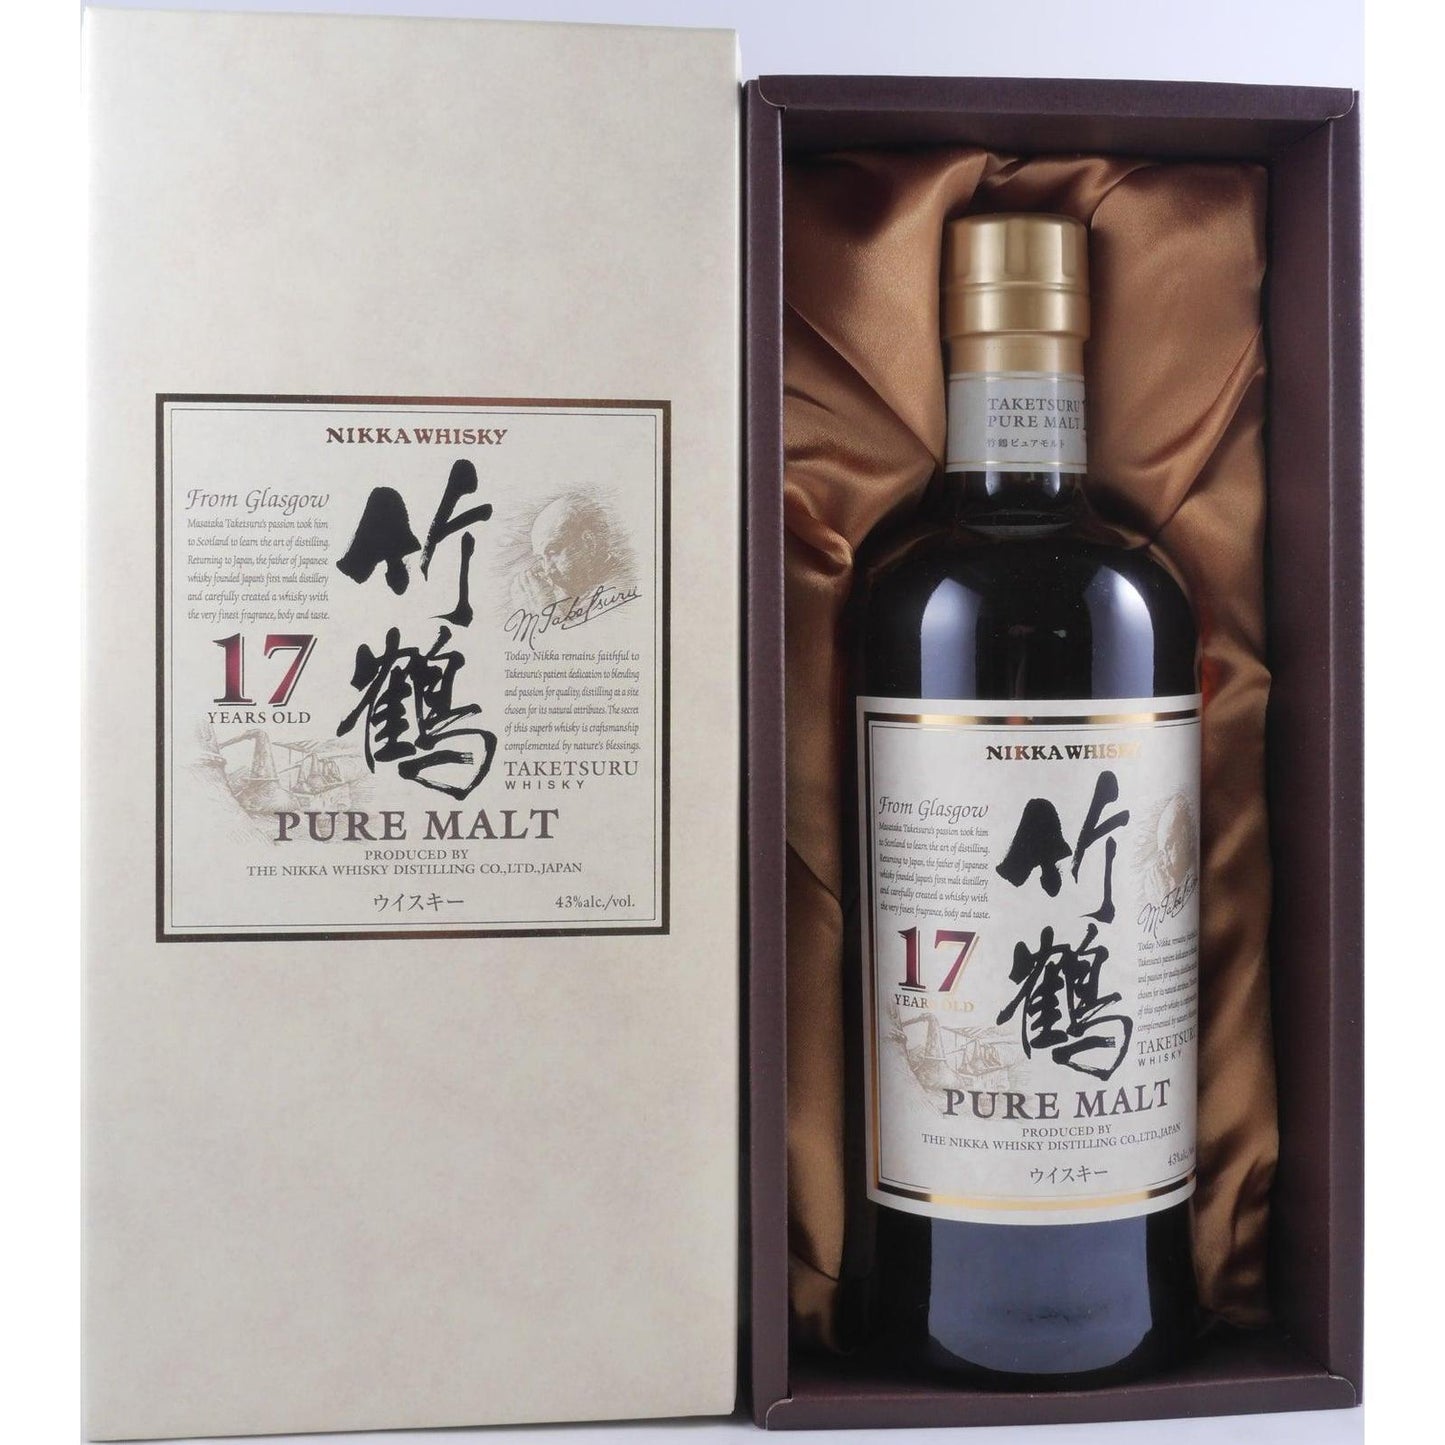 Nikka Whisky Taketsuru Pure Malt 17 Year Old Japanese Whisky WITH GIFT BOX - Booze House